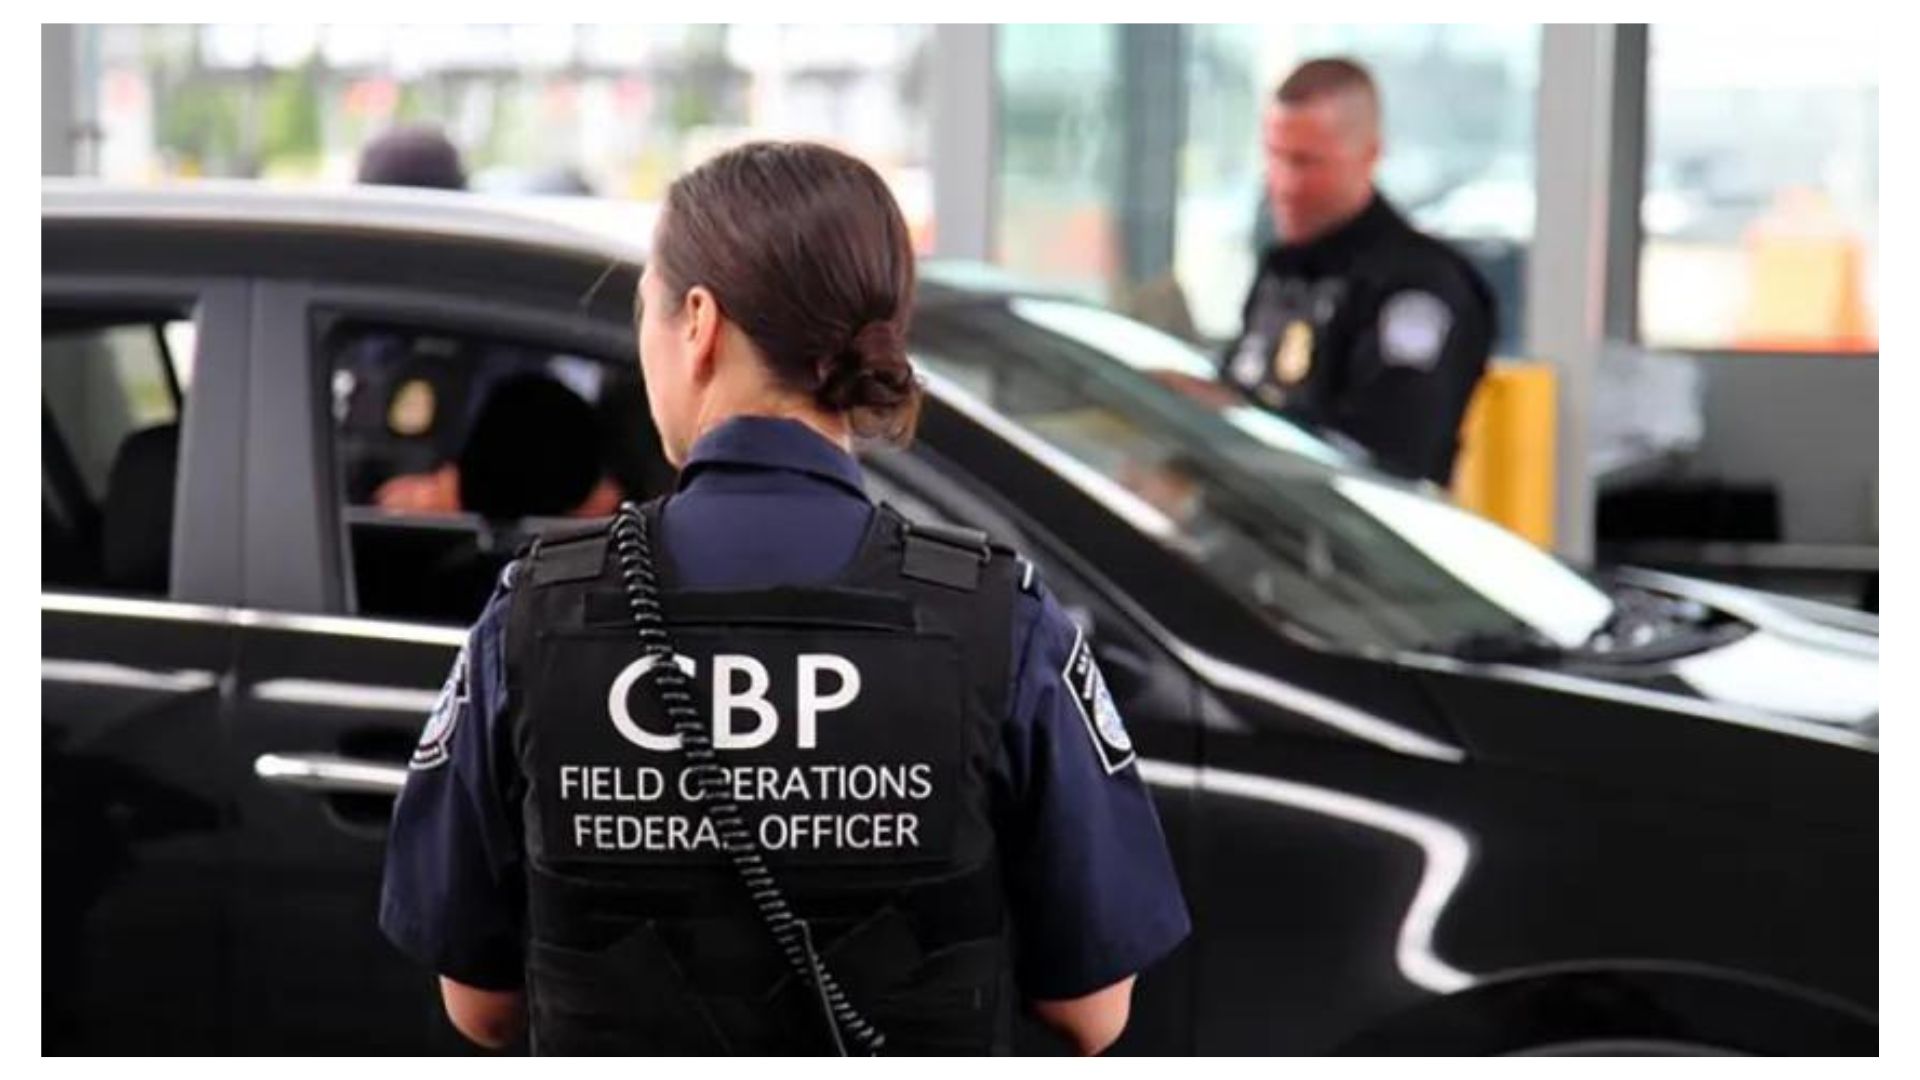 ¿Cómo trabajar con CBP? Ofertas de trabajo para los recién egresados, salario y más